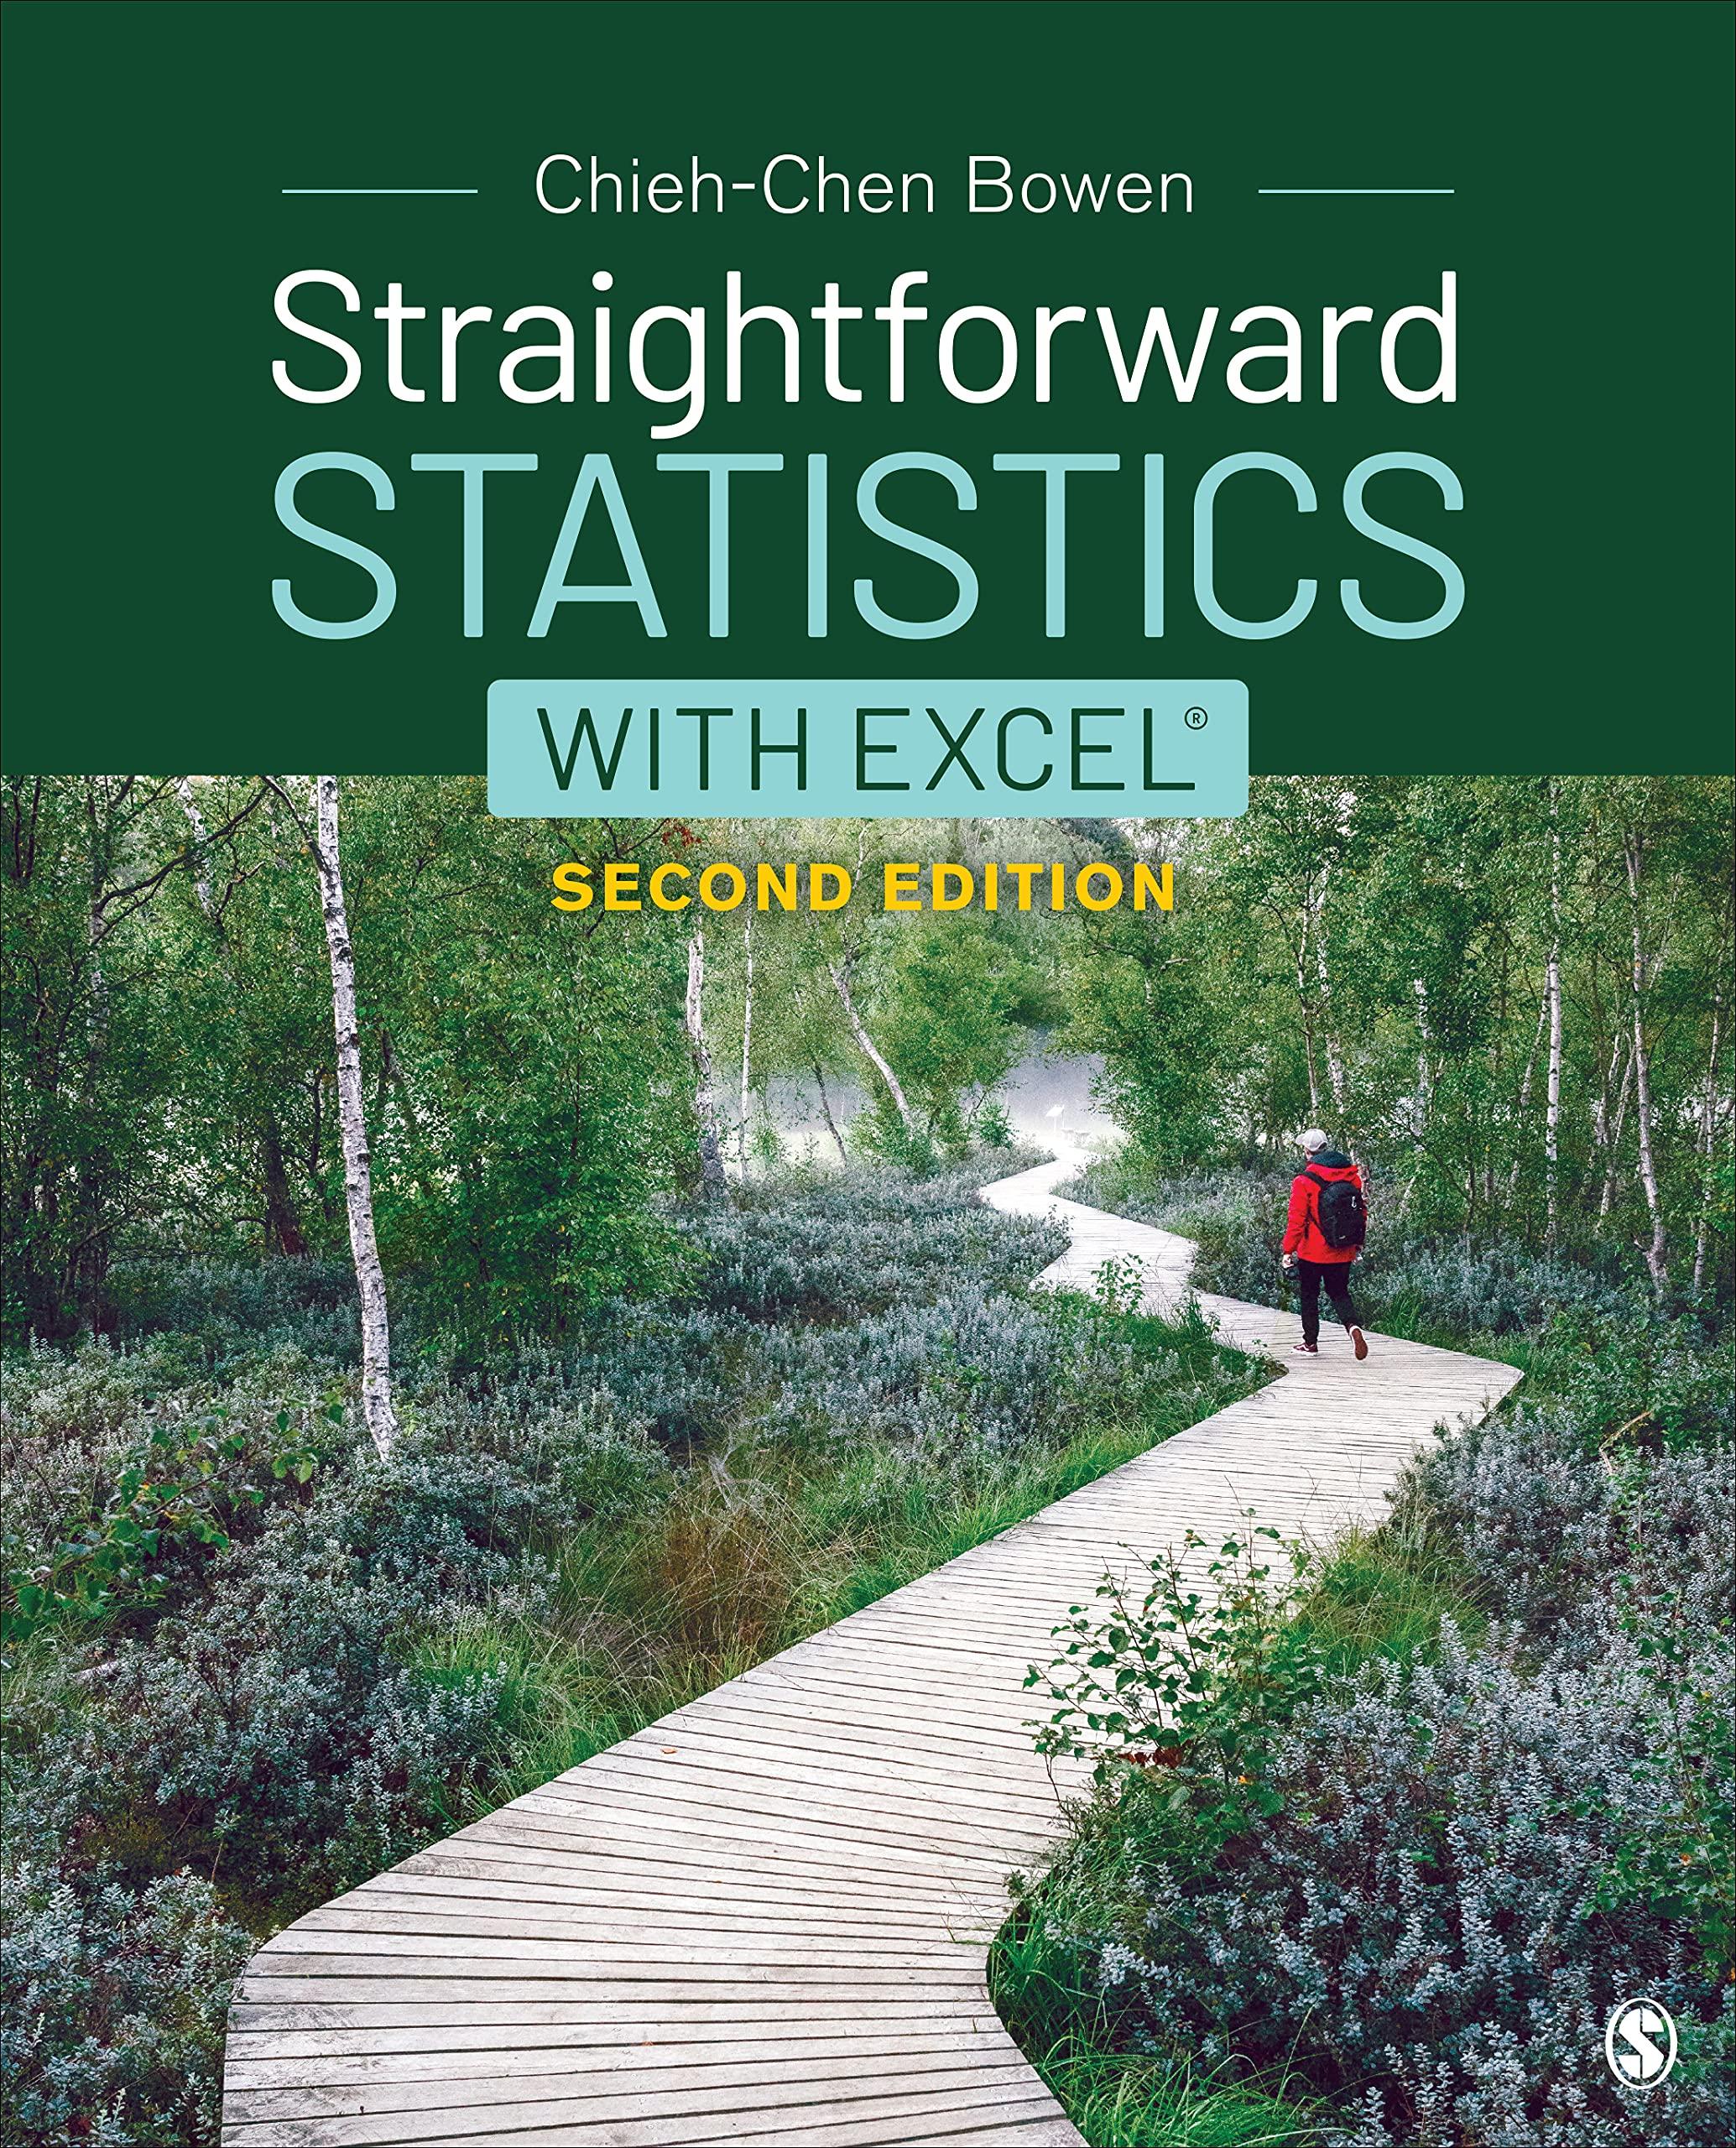 straightforward statistics with excel 2nd edition chieh-chen bowen 1544361963, 978-1544361963